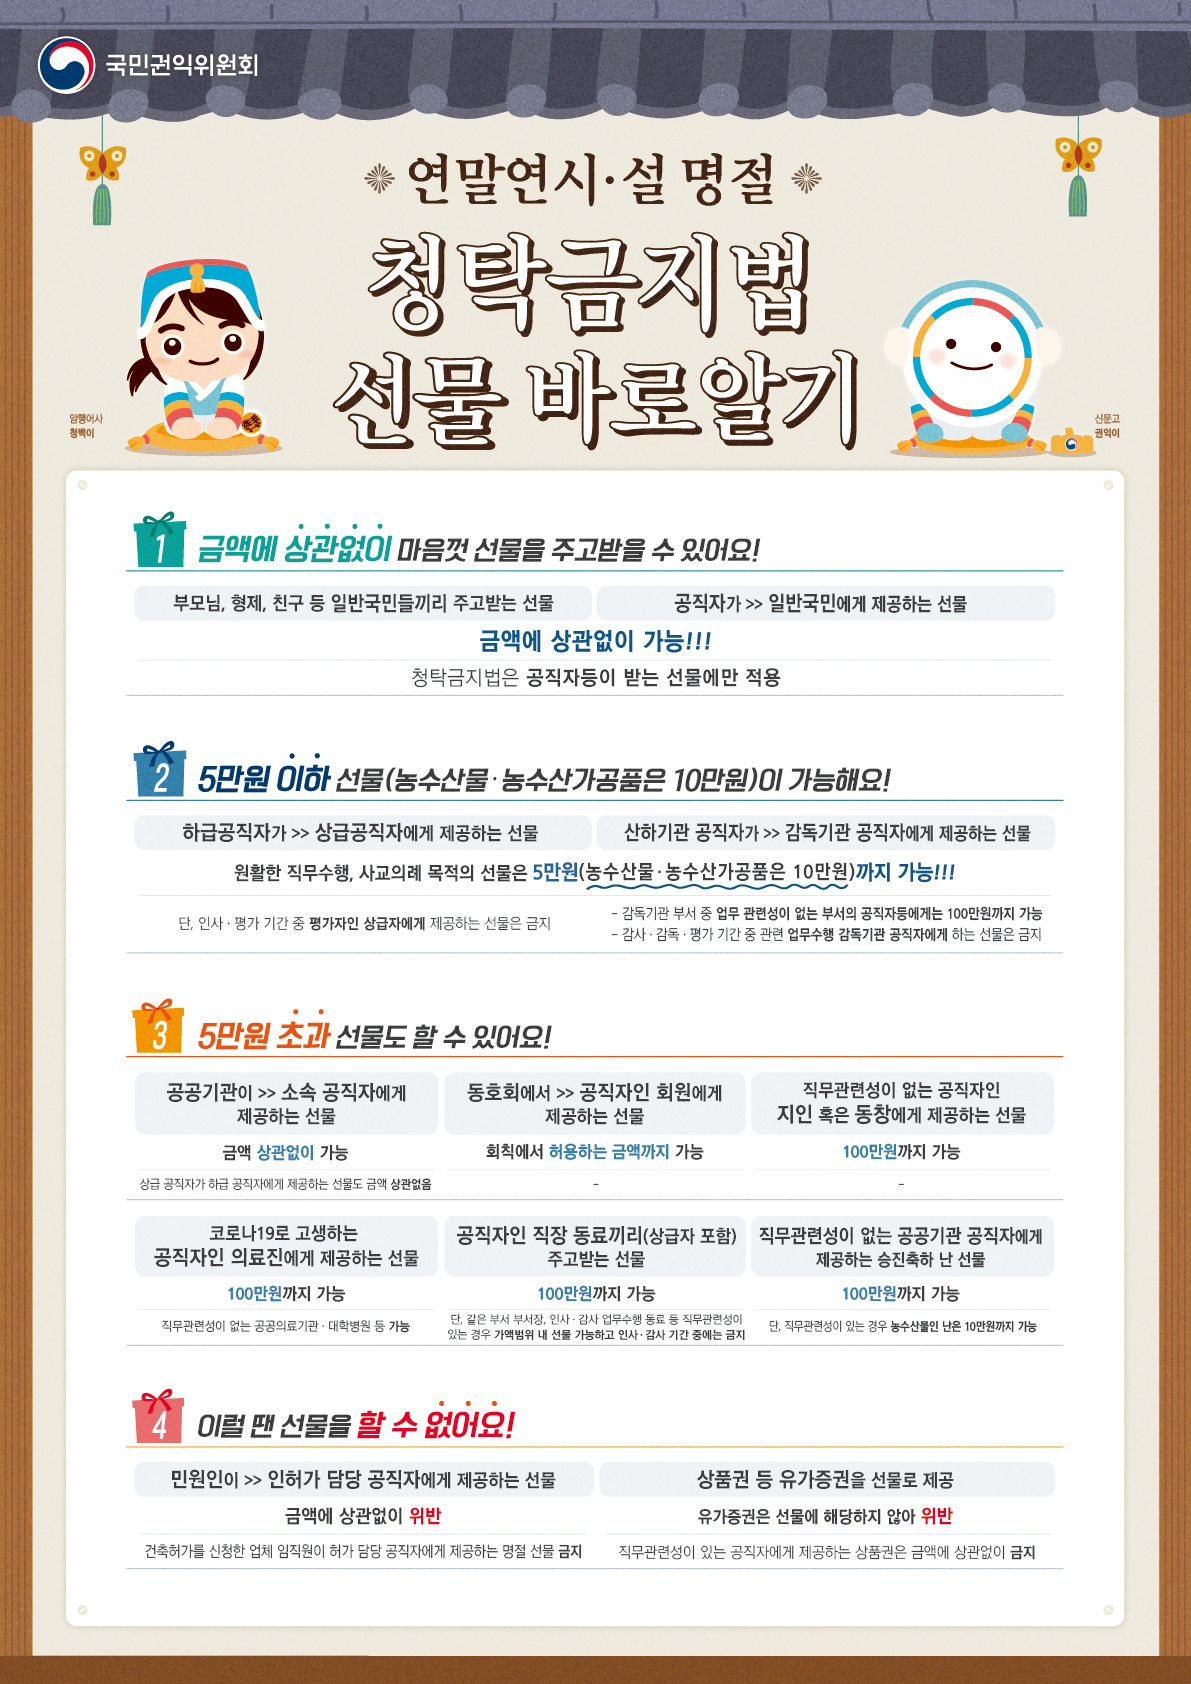 국민권익위원회 홍보 자료.jpg